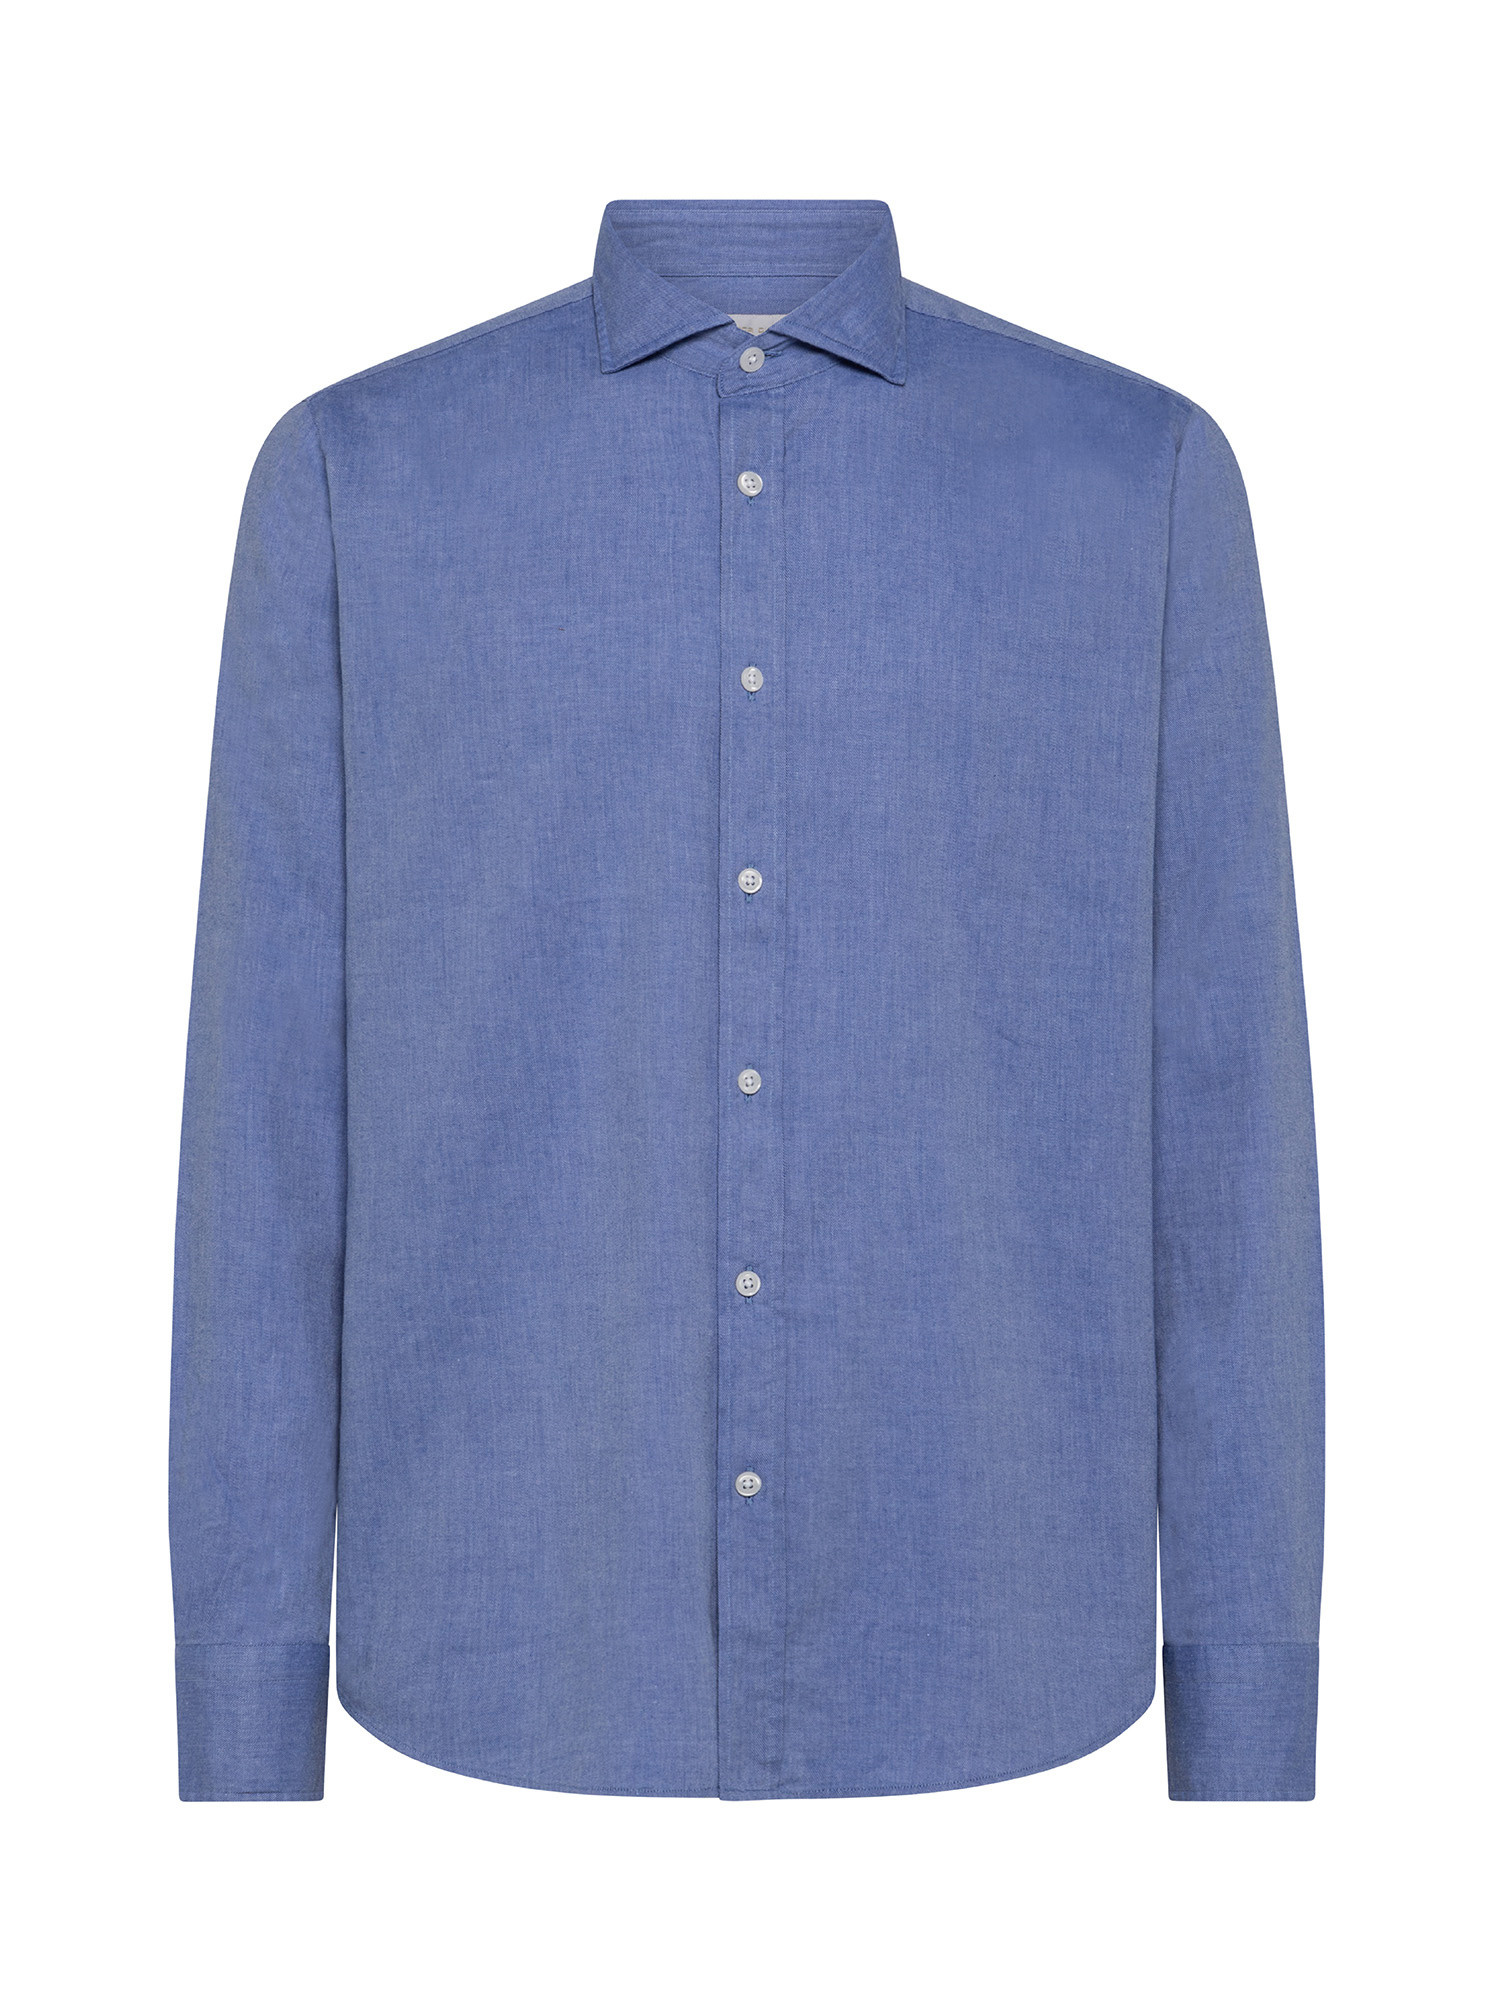 Camicia tailor fit in morbida flanella di cotone organico, Azzurro, large image number 0